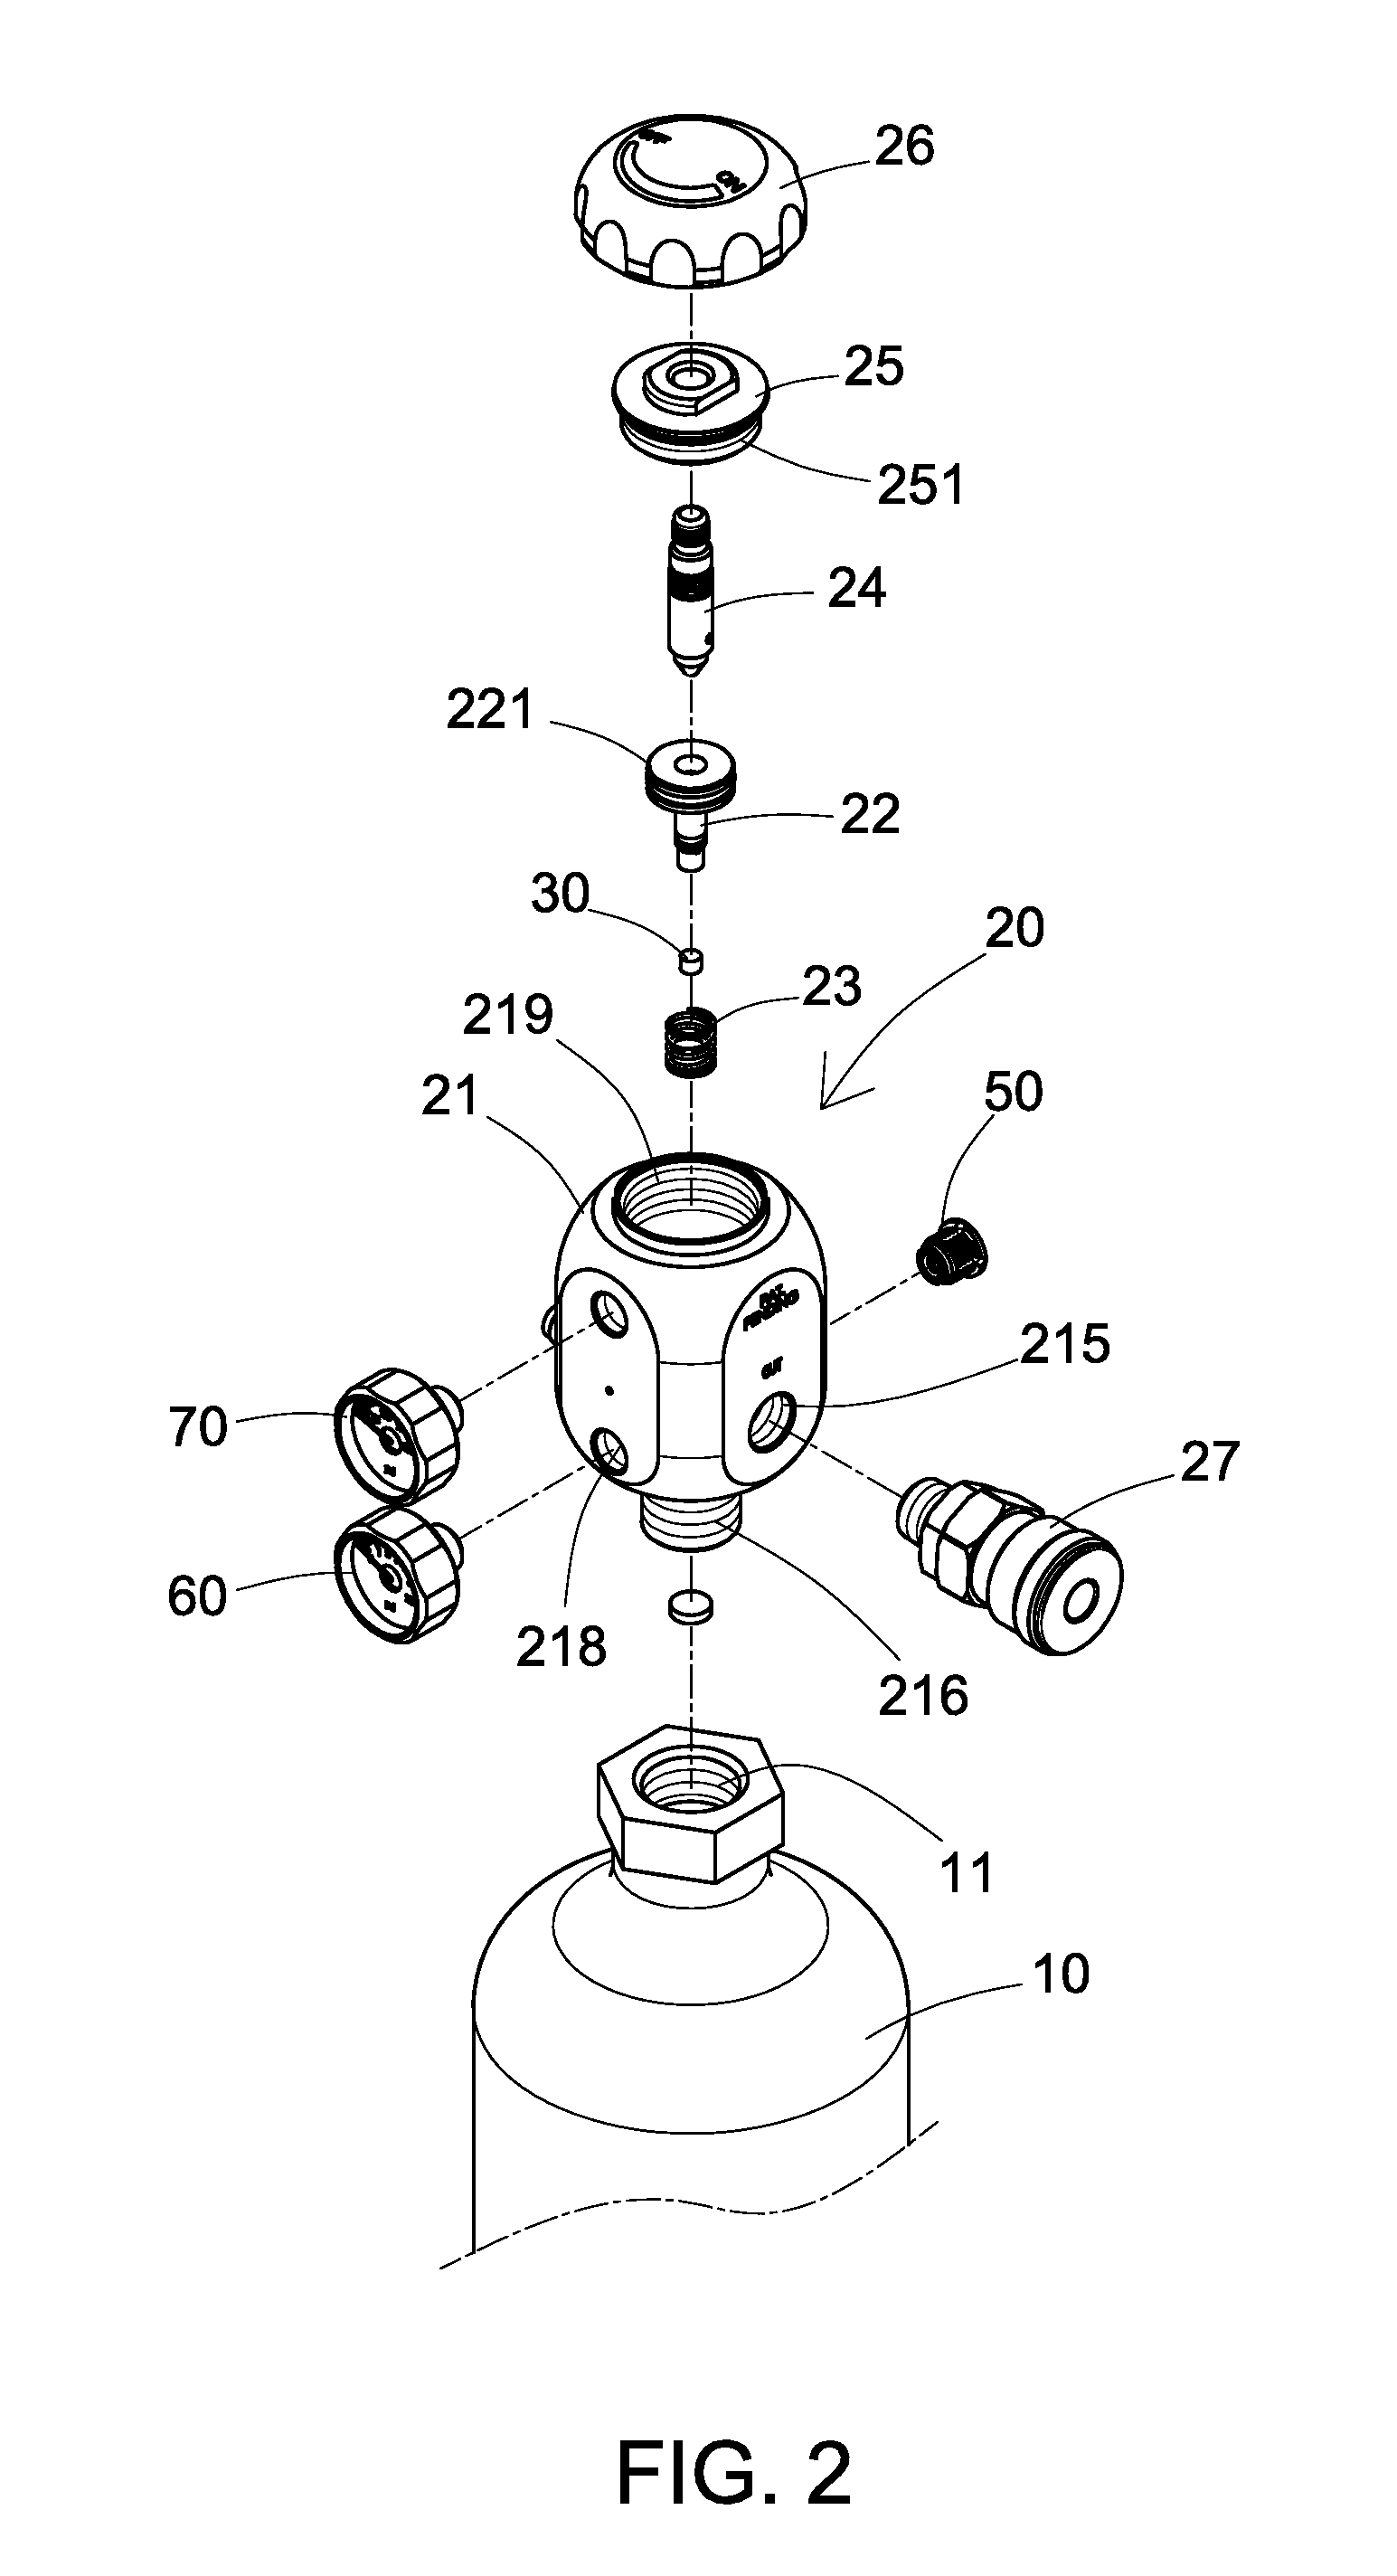 Pressure regulator of gas cylinder